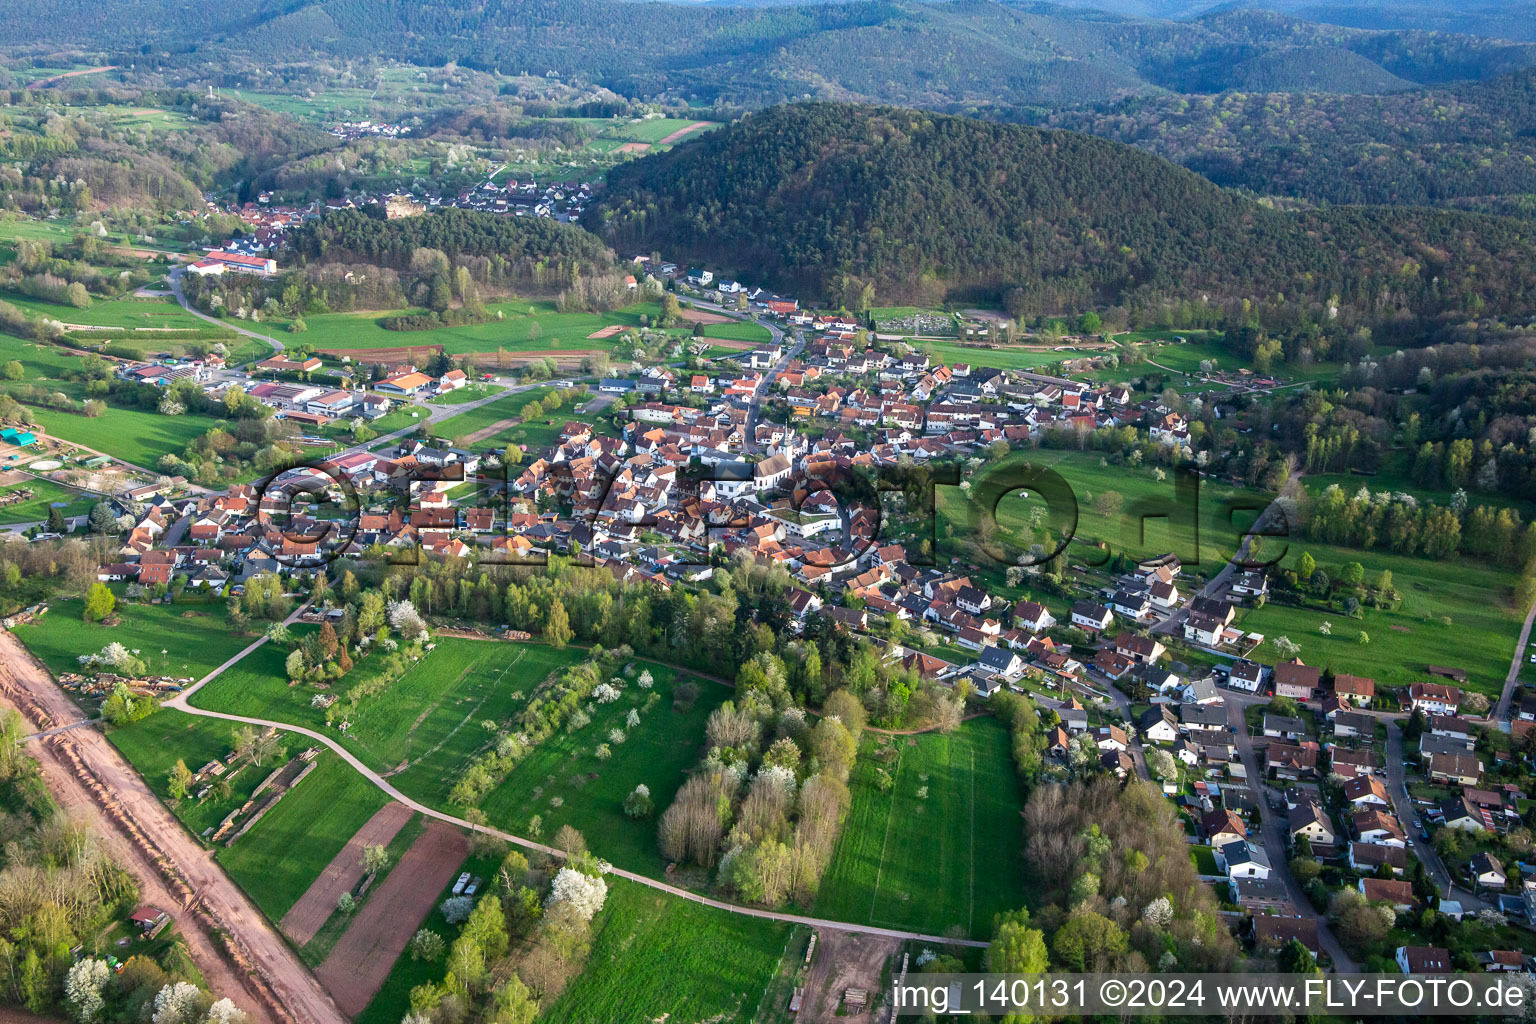 Luftbild von Ortsteil Gossersweiler in Gossersweiler-Stein im Bundesland Rheinland-Pfalz, Deutschland